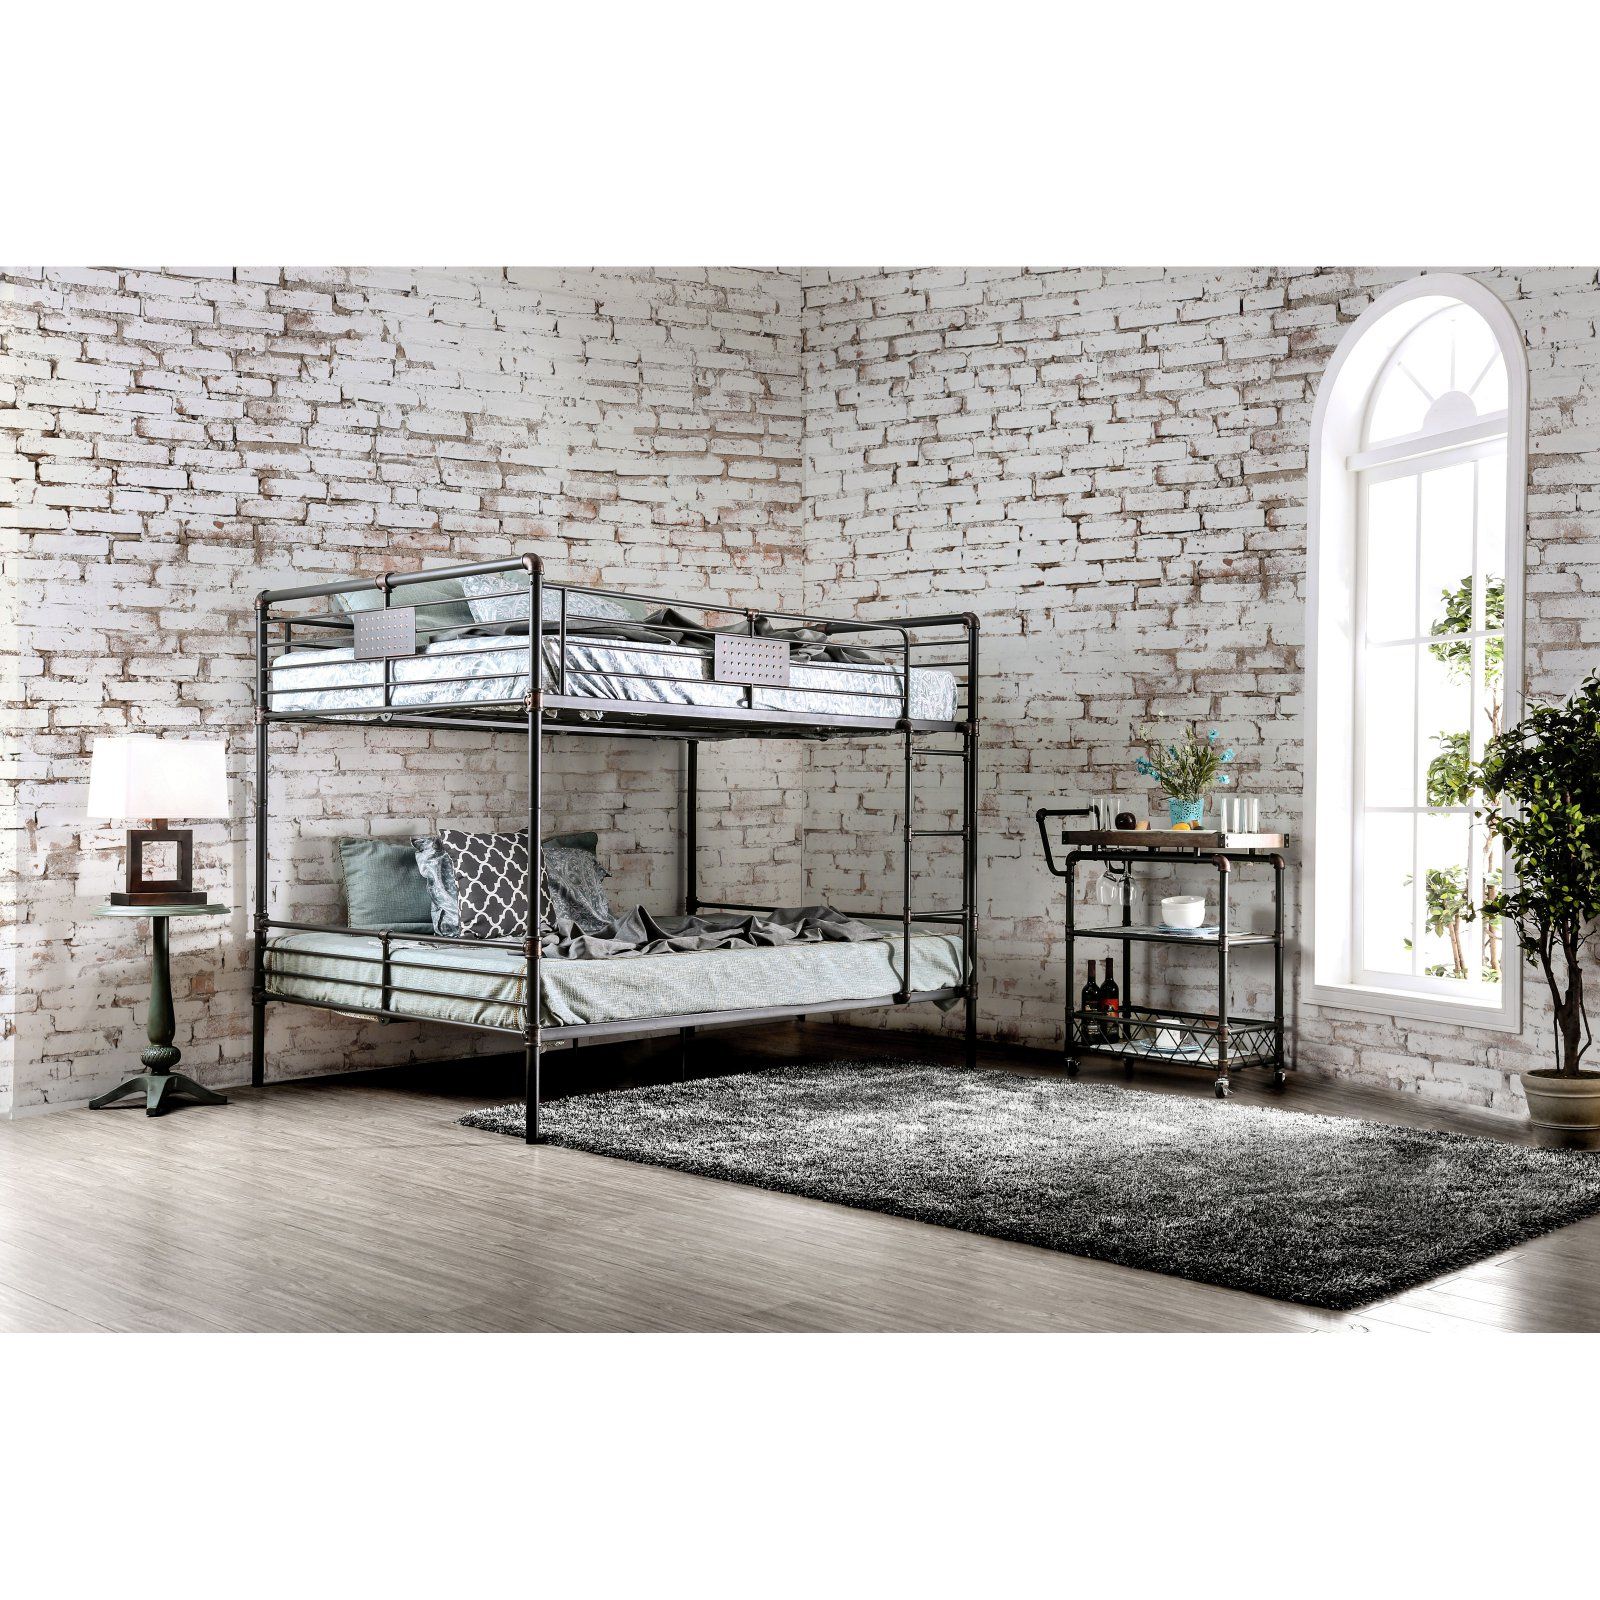 Furniture of America Rilie Metal Bunk Bed Queen-over-Queen, Black - Walmart.com | Walmart (US)